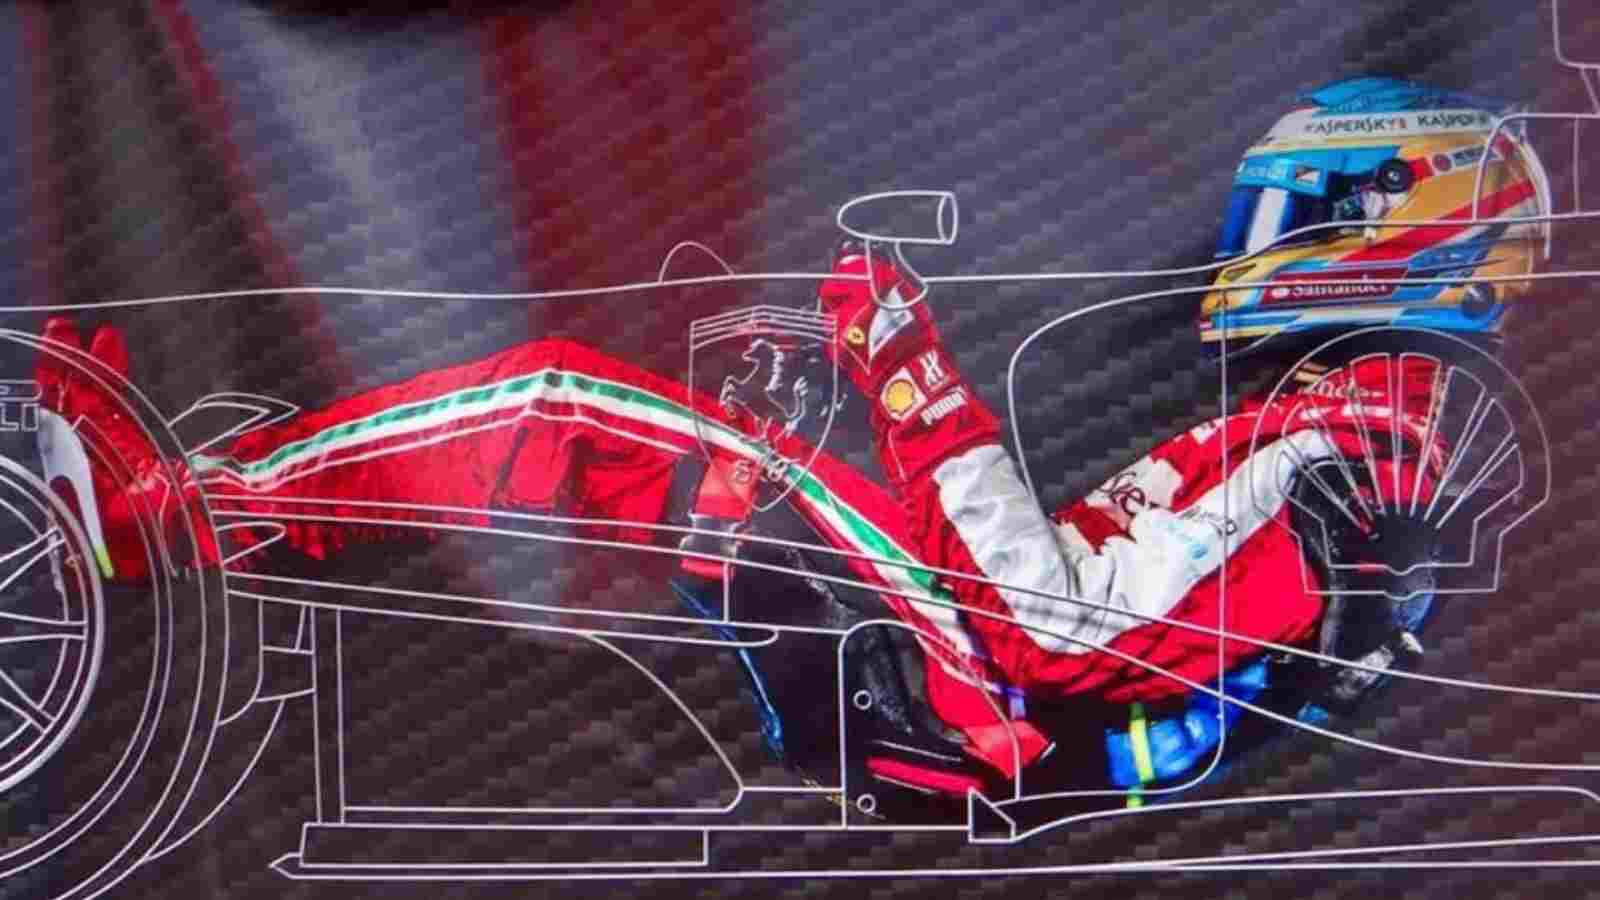 - ¿El coche de F1 tiene pedales? Cómo funcionan los pedales de Fórmula 1